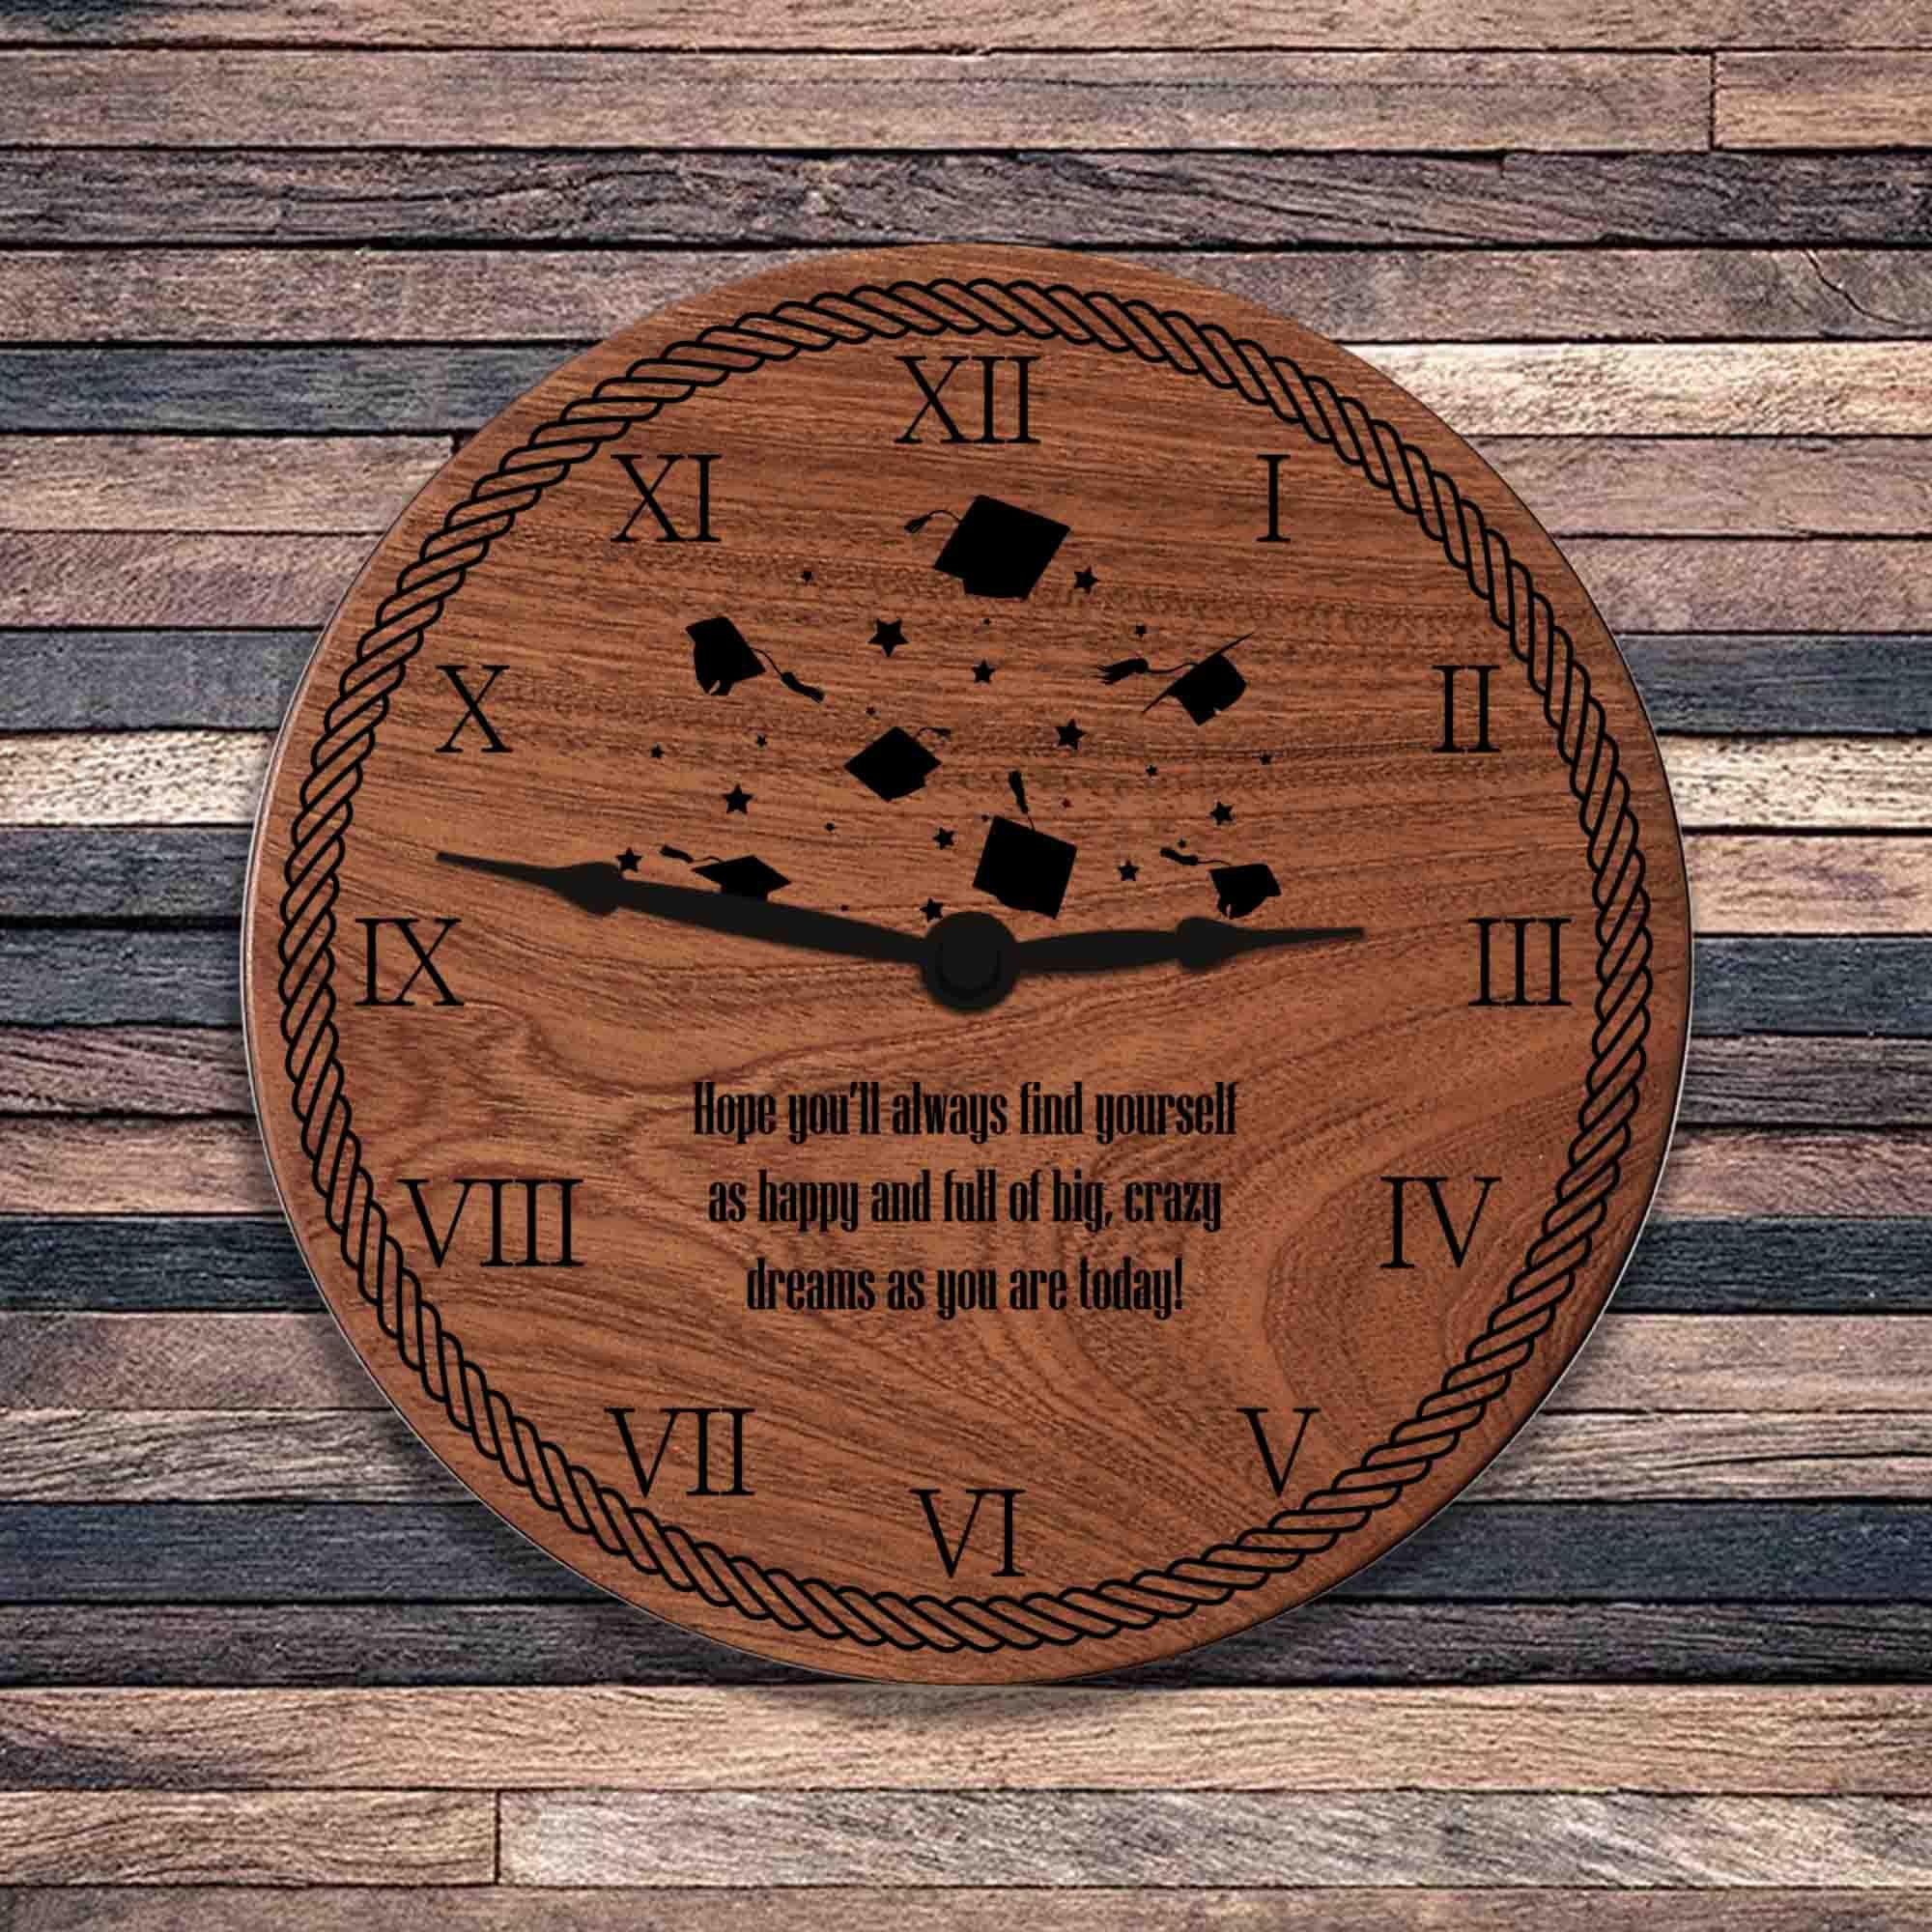 Inspirational Wooden Wall Clock